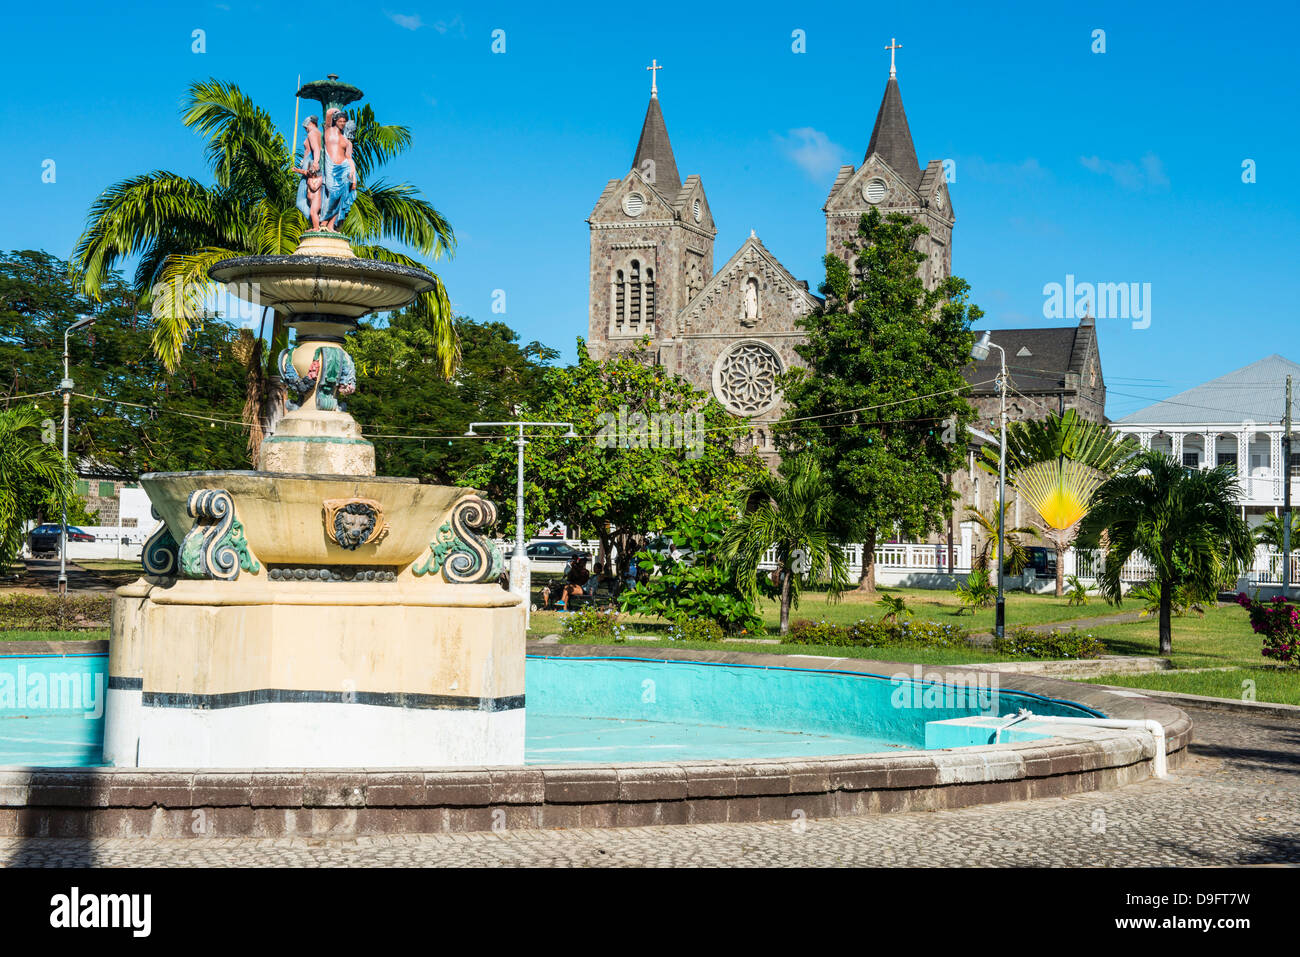 La place de l'indépendance à Basseterre, Saint Kitts, Saint Kitts et Nevis, Iles sous le vent, Antilles, Caraïbes Banque D'Images